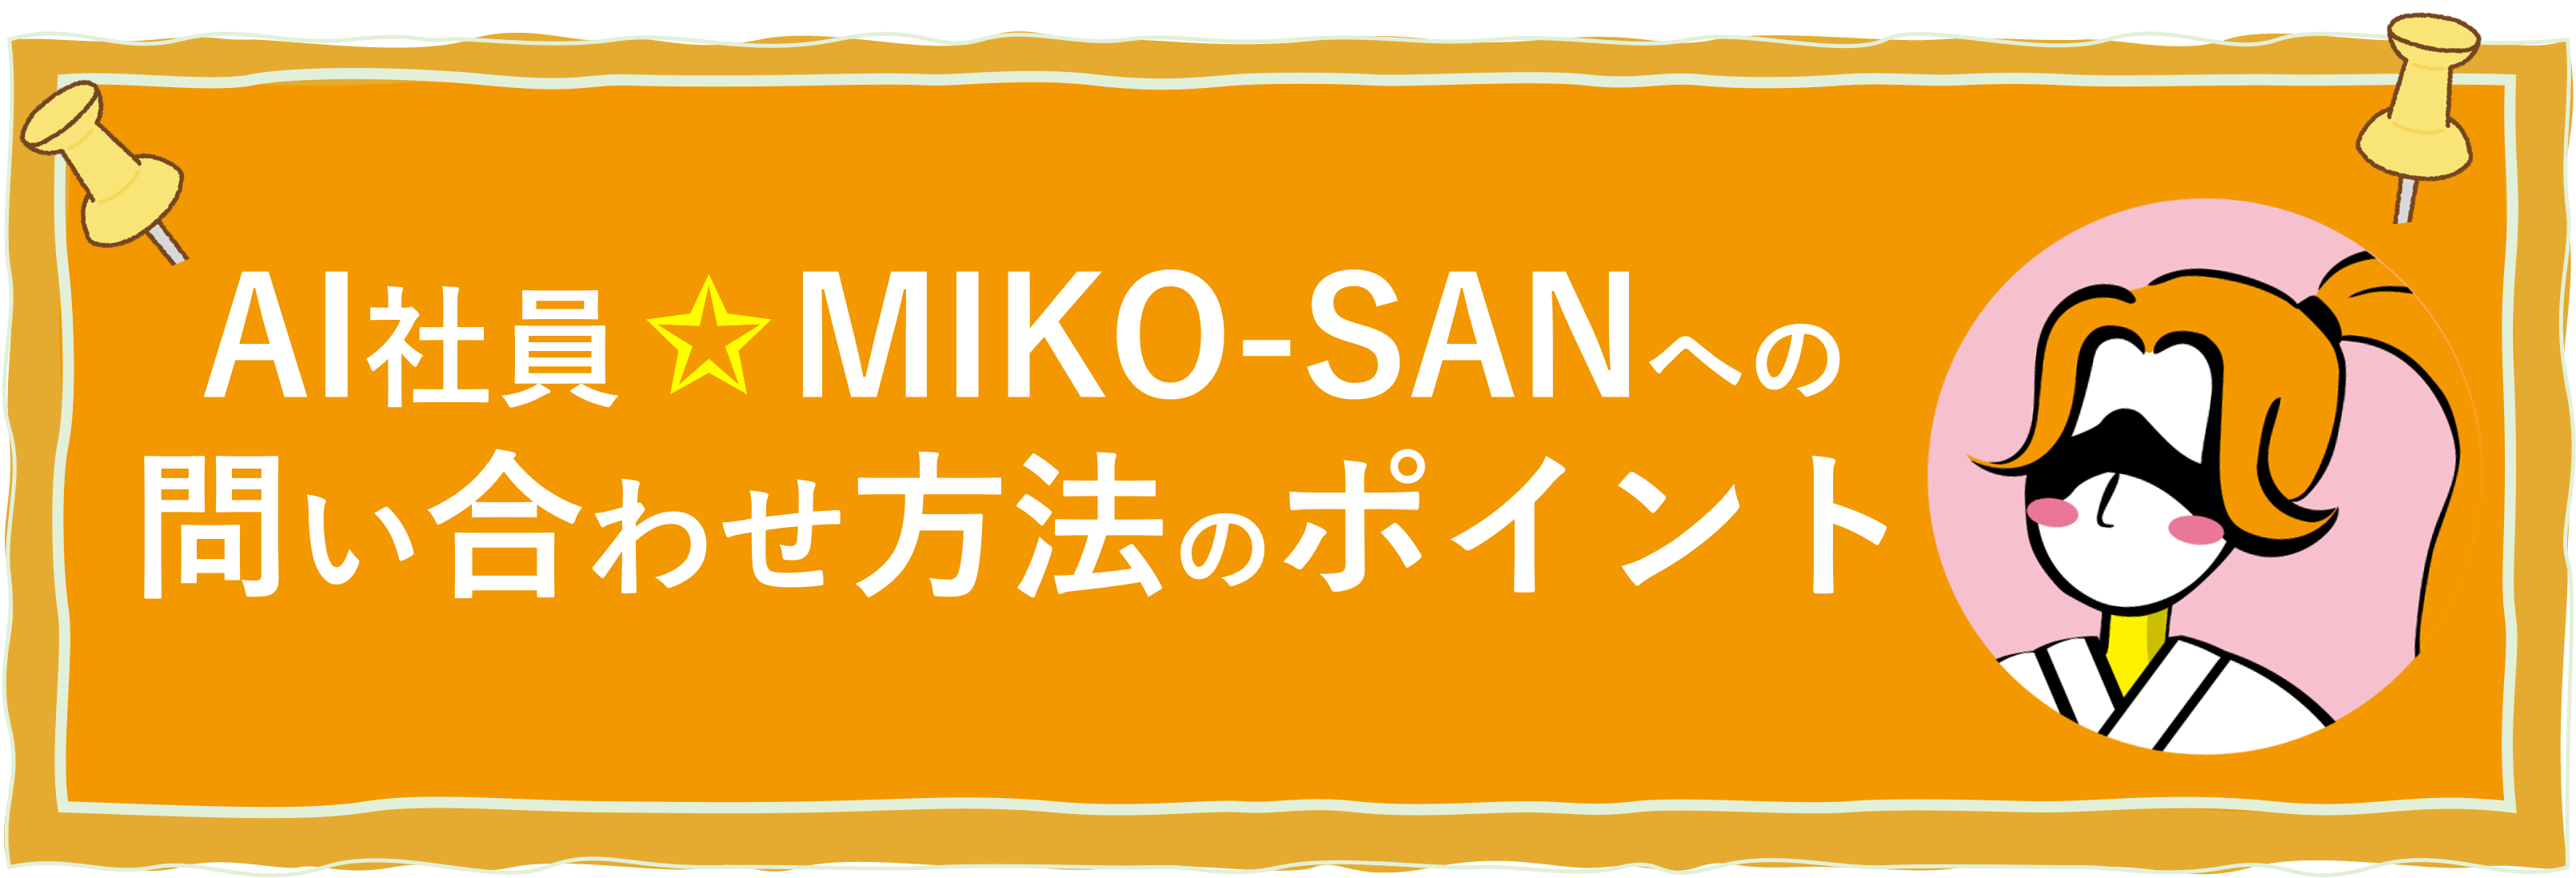 MIKO-SANへのお問い合わせ方法のポイント